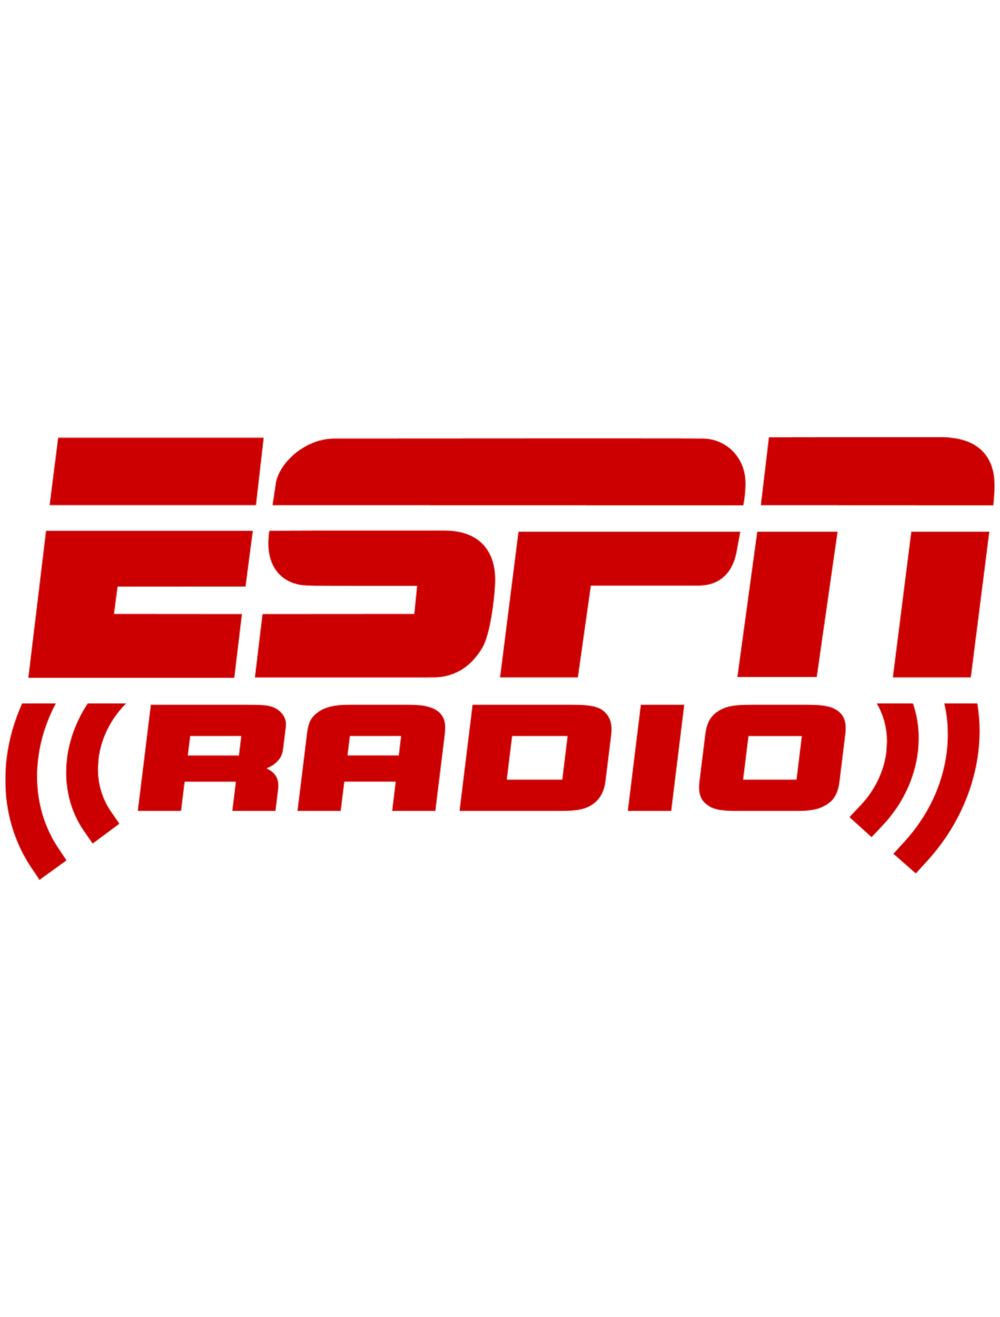 ESPN logo PNG image